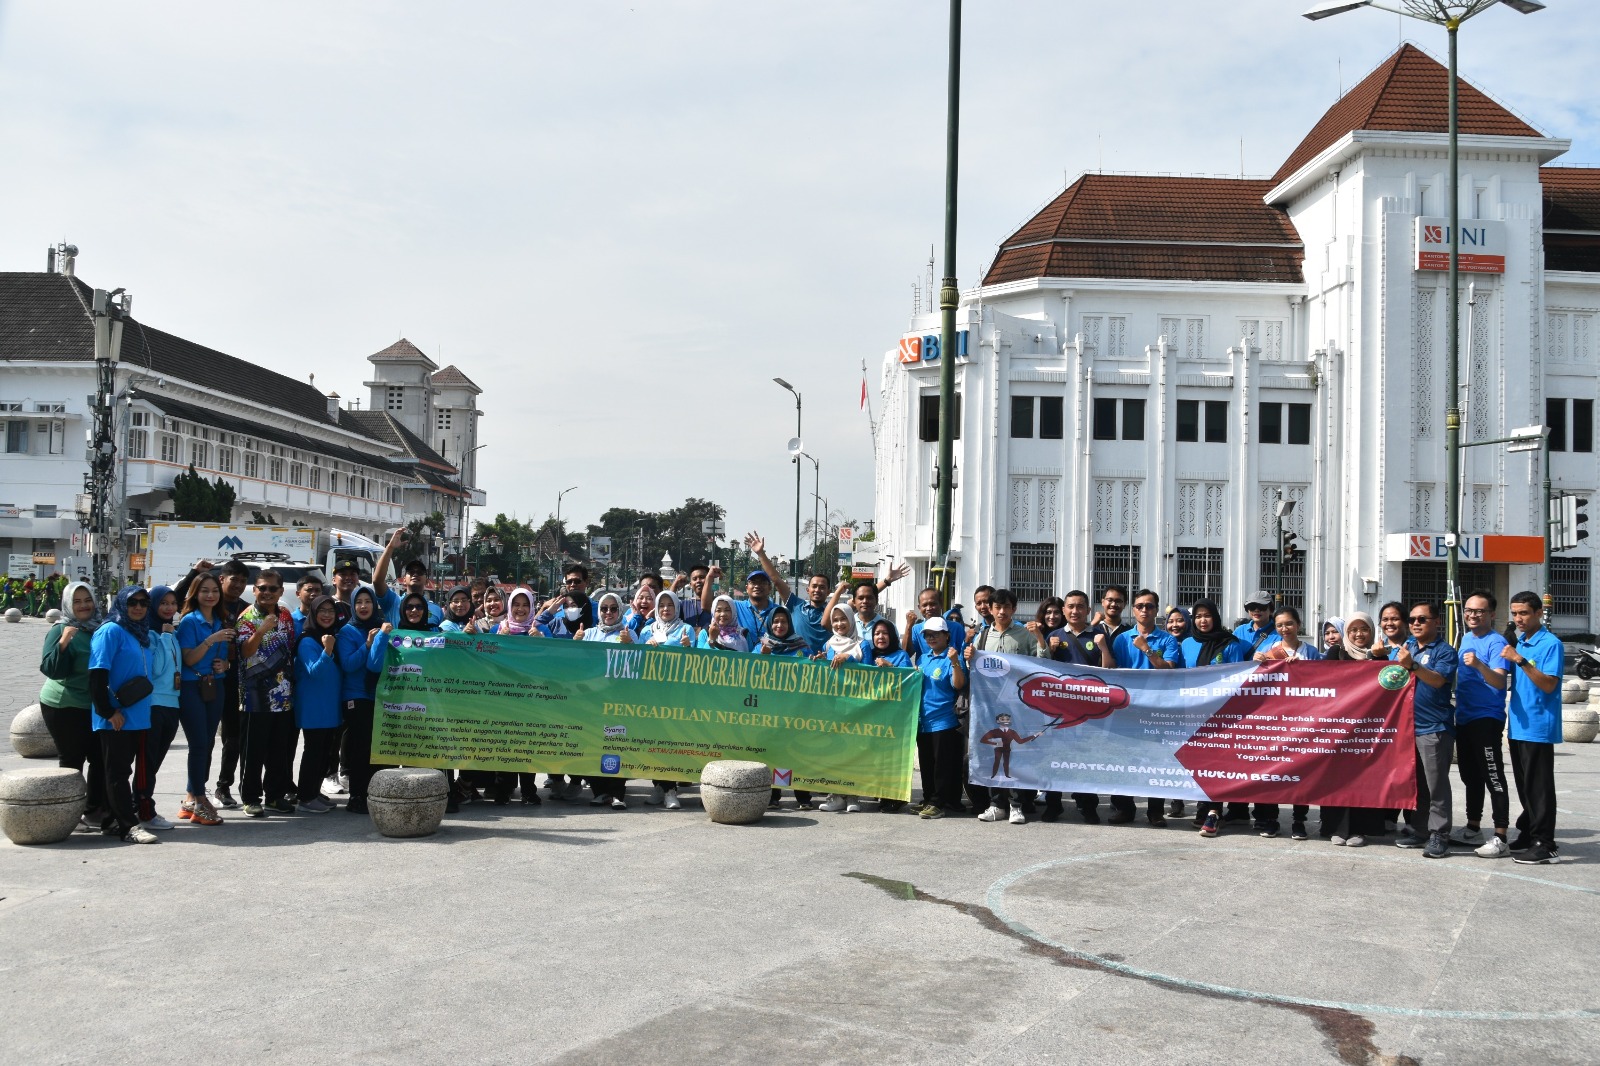 Pengadilan Negeri Yogyakarta Menggelar Public Campaign 